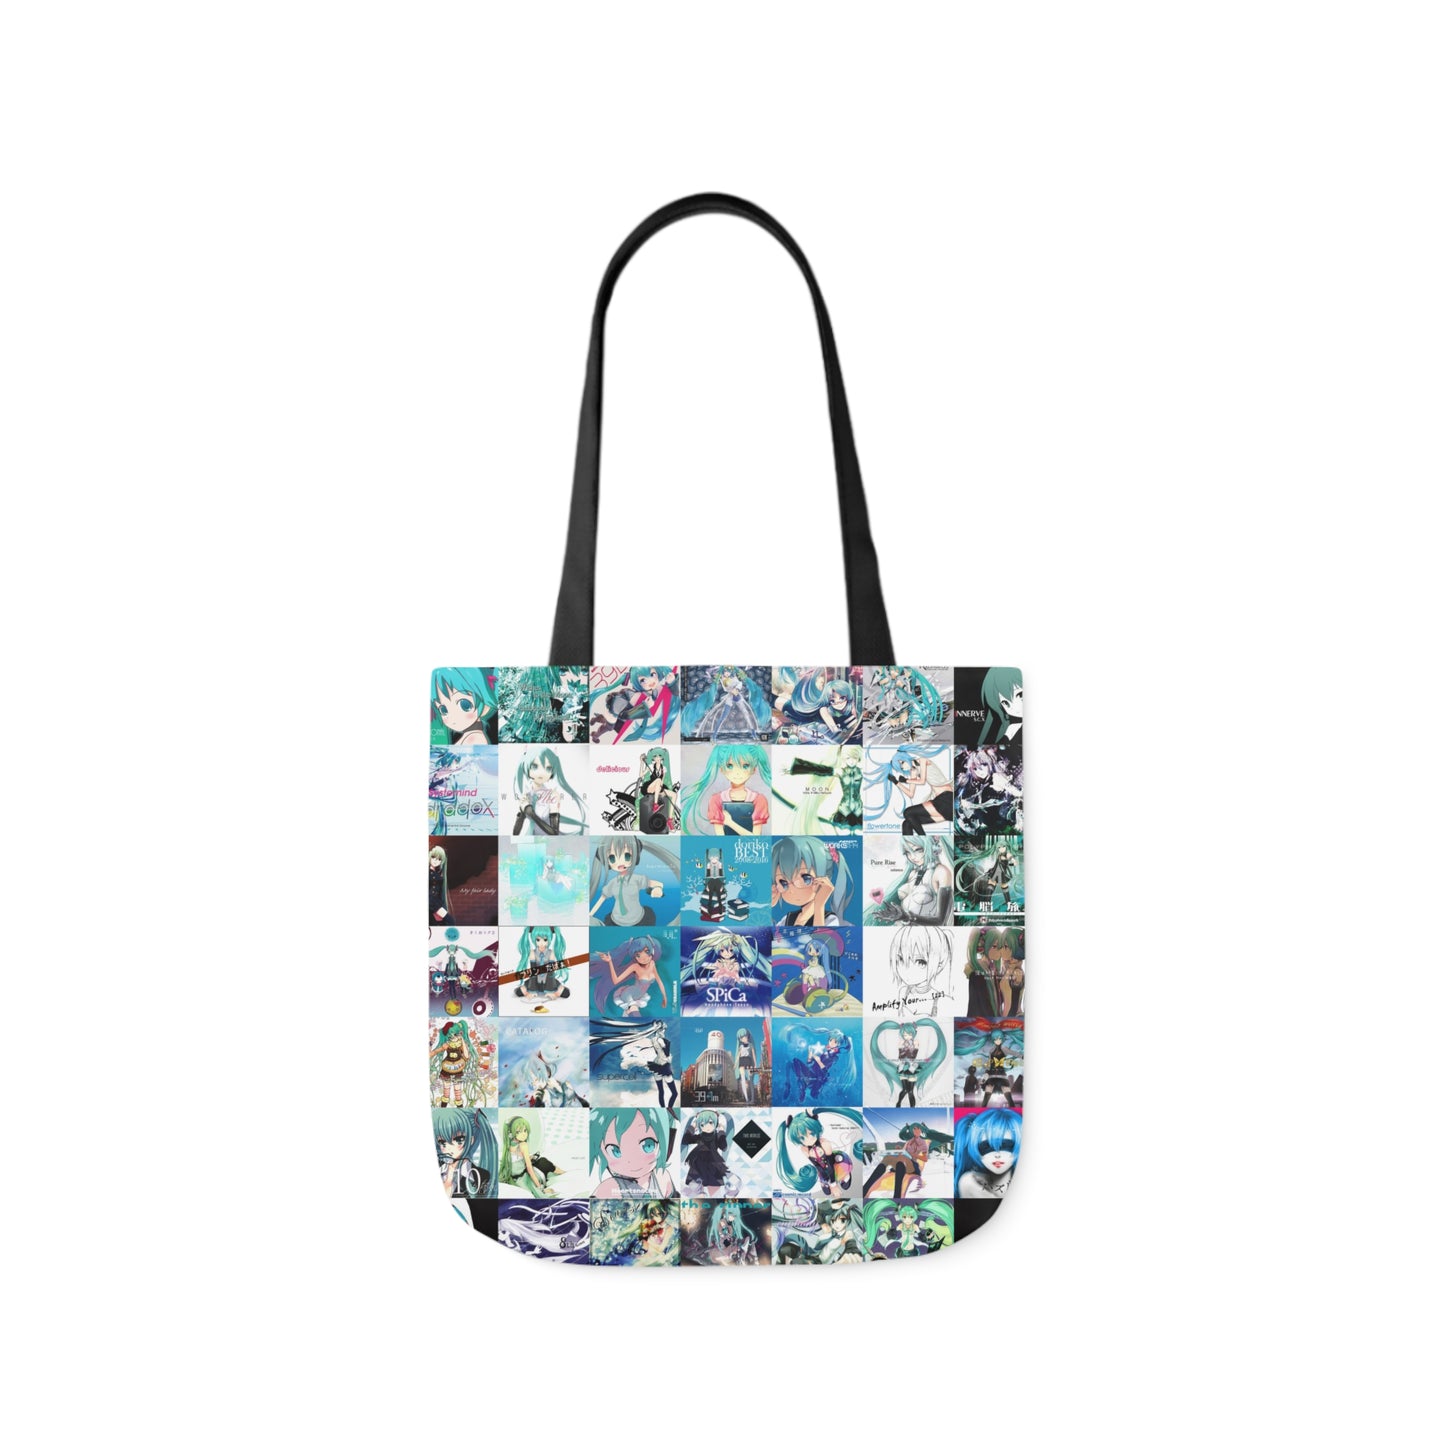 Hatsune Miku Album Cover Collage Polyester Canvas Tote Bag